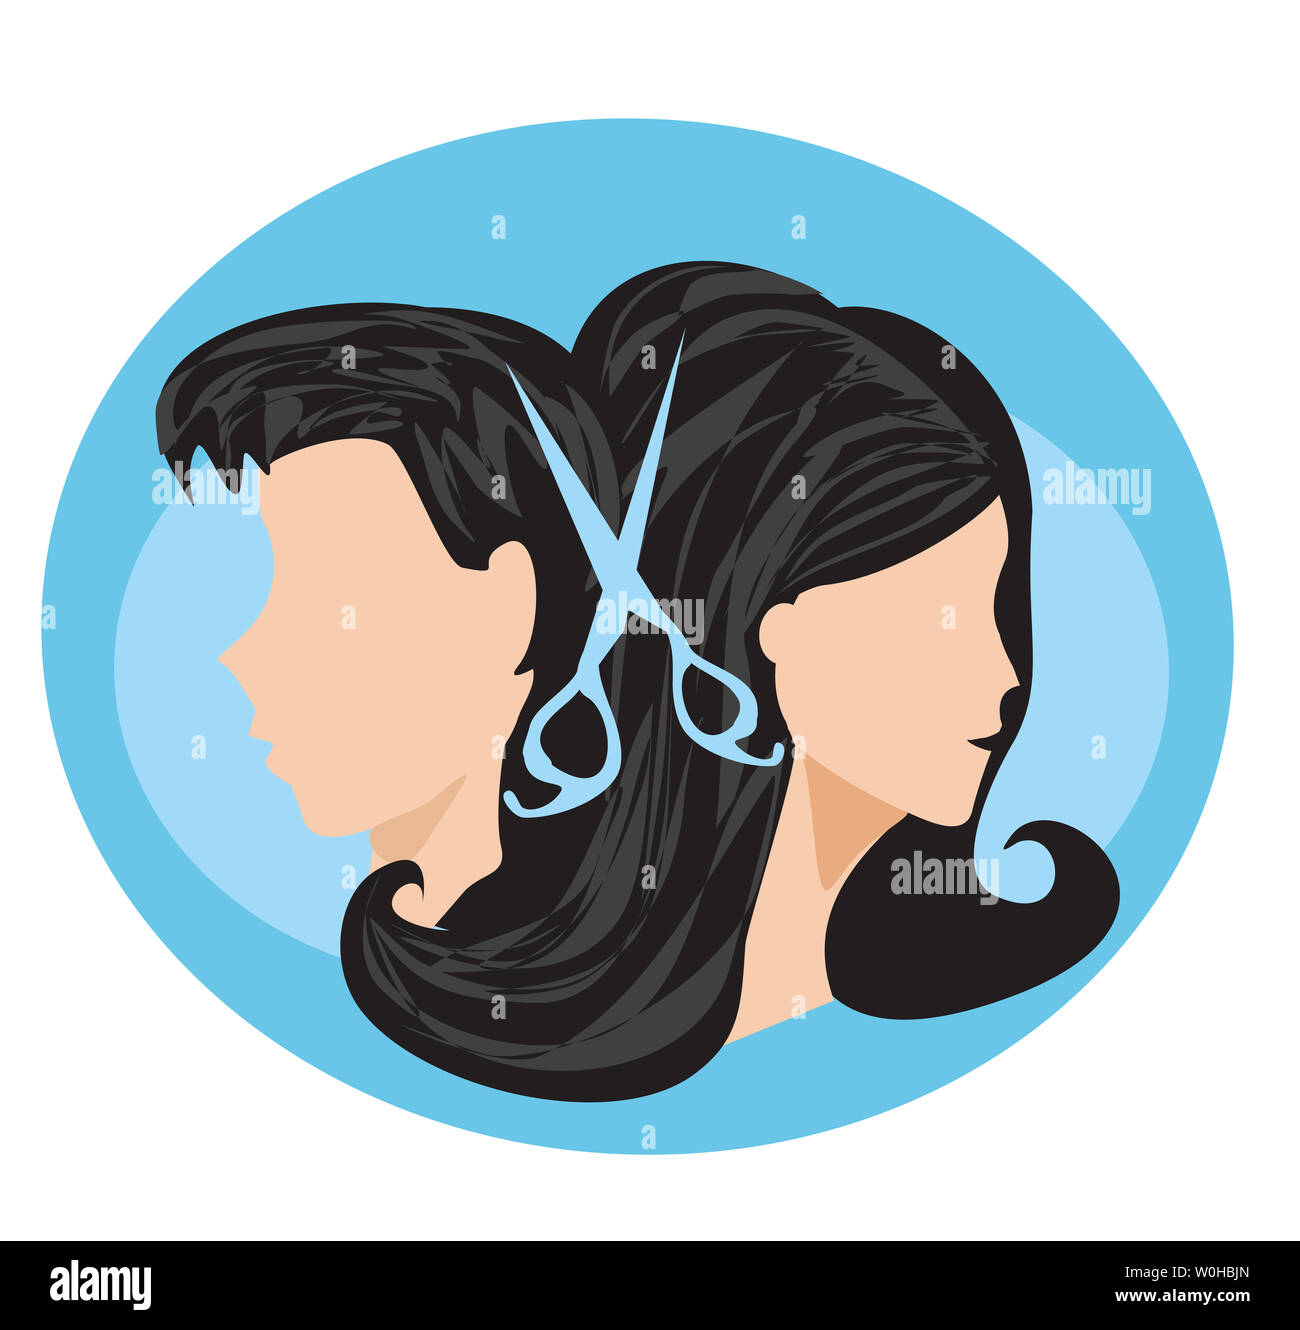 hairdressing salon - icon Stock Photo - Alamy